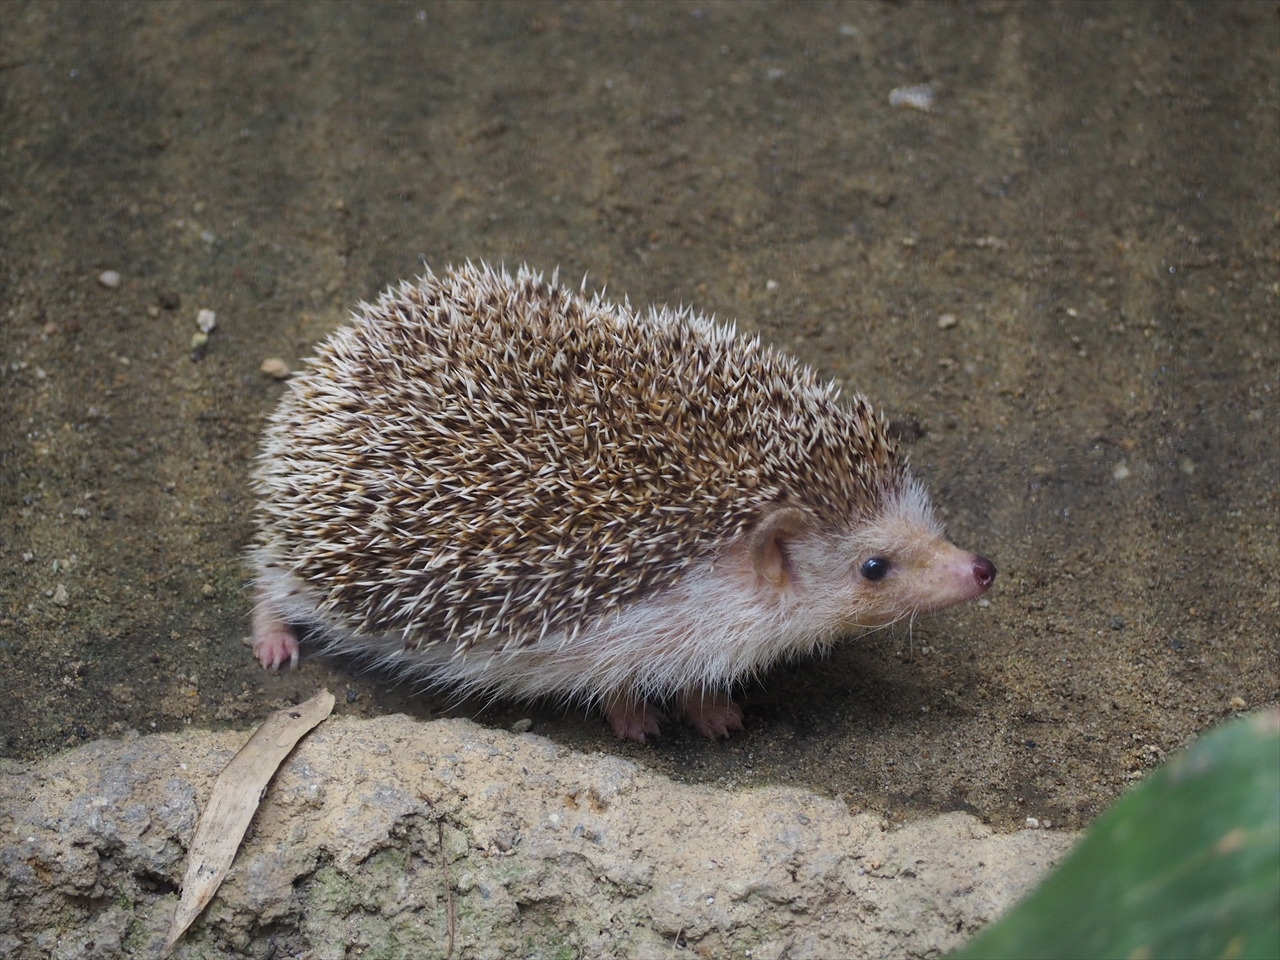 ハリネズミ屋外放飼始めました 飼育員ブログ ブログ 京都市動物園